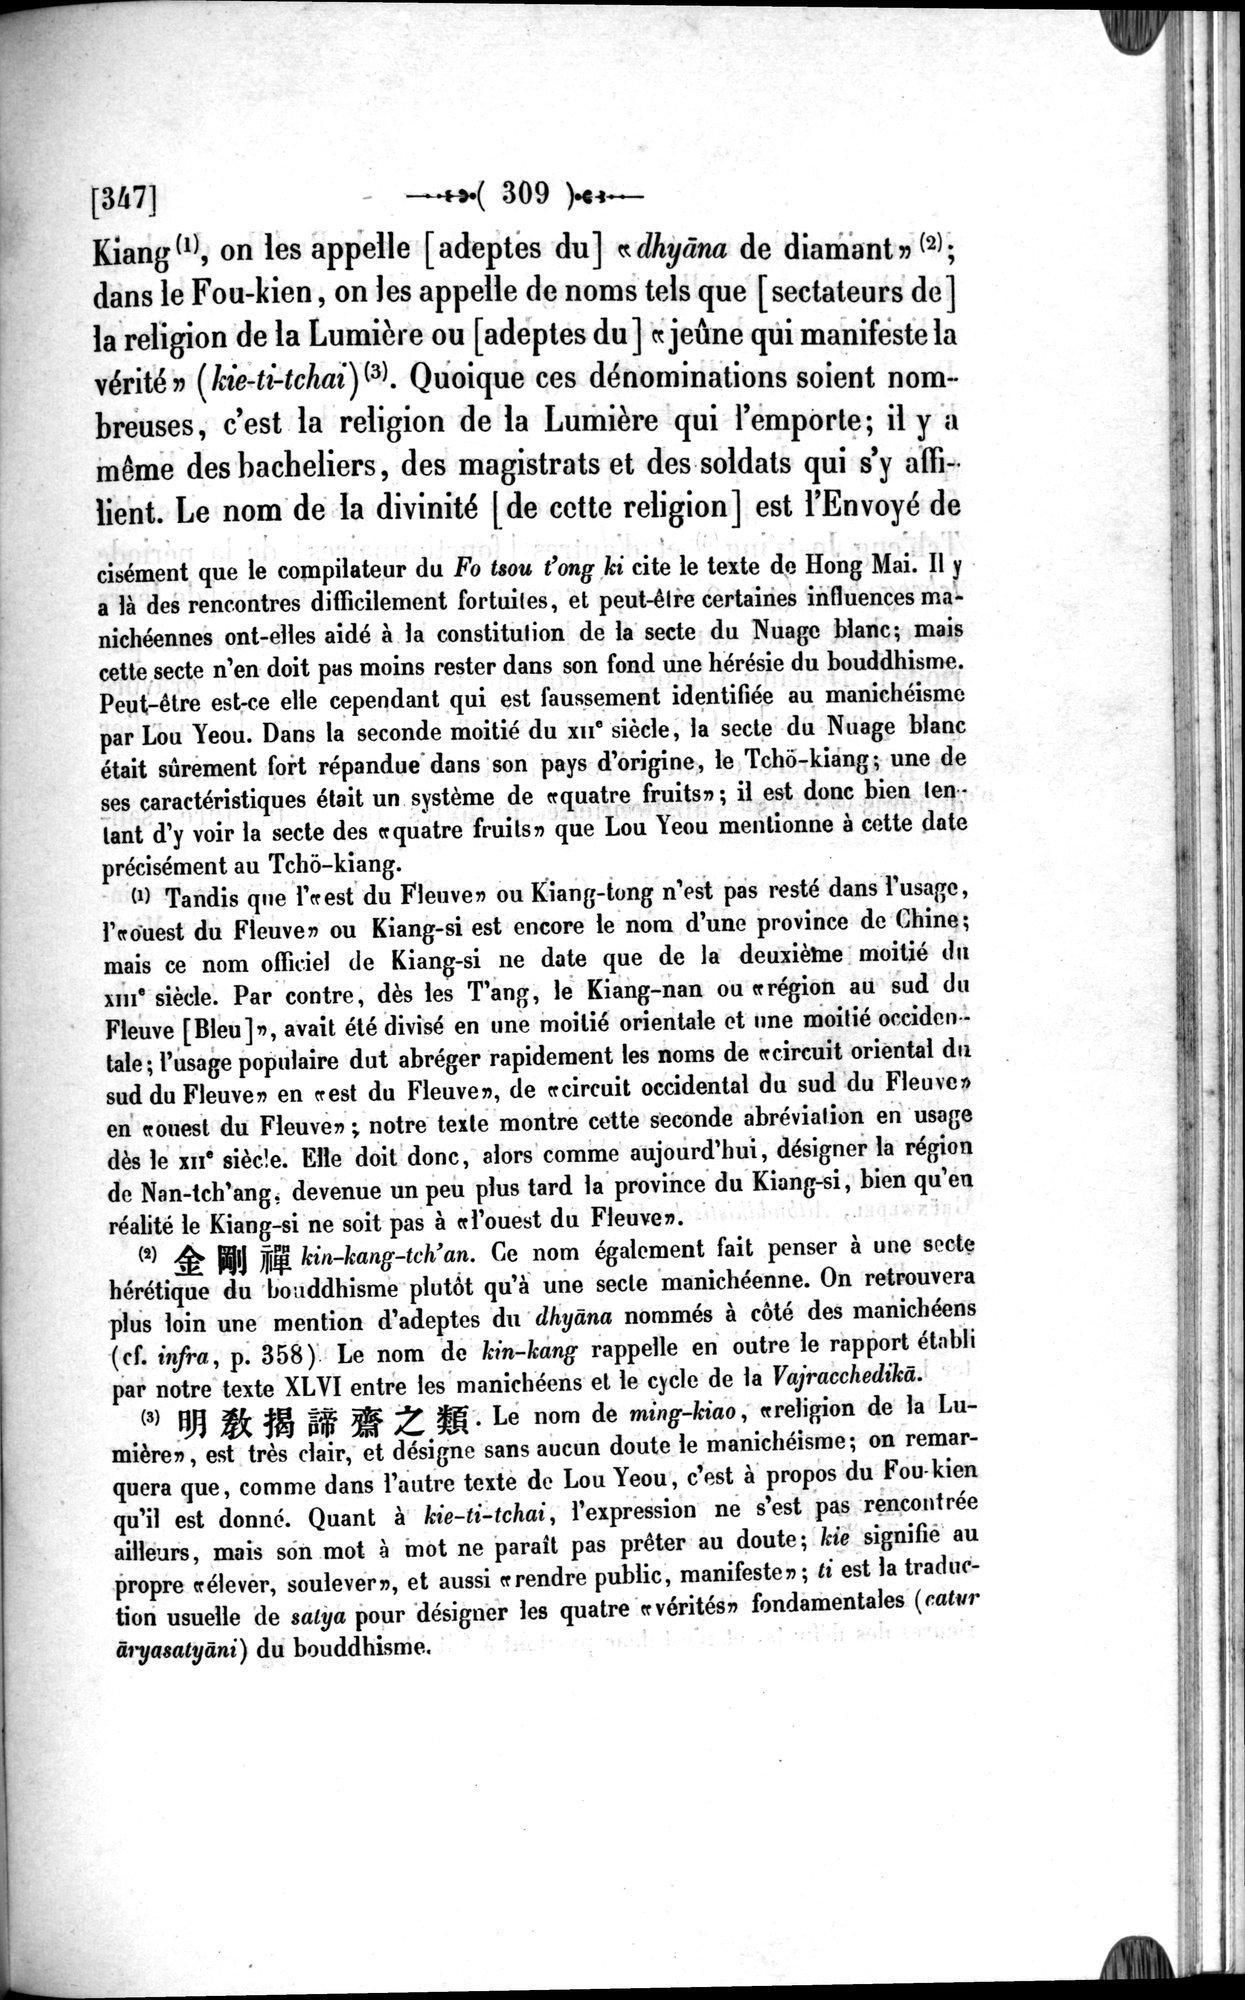 Un traité manichéen retrouvé en Chine : vol.1 / Page 319 (Grayscale High Resolution Image)